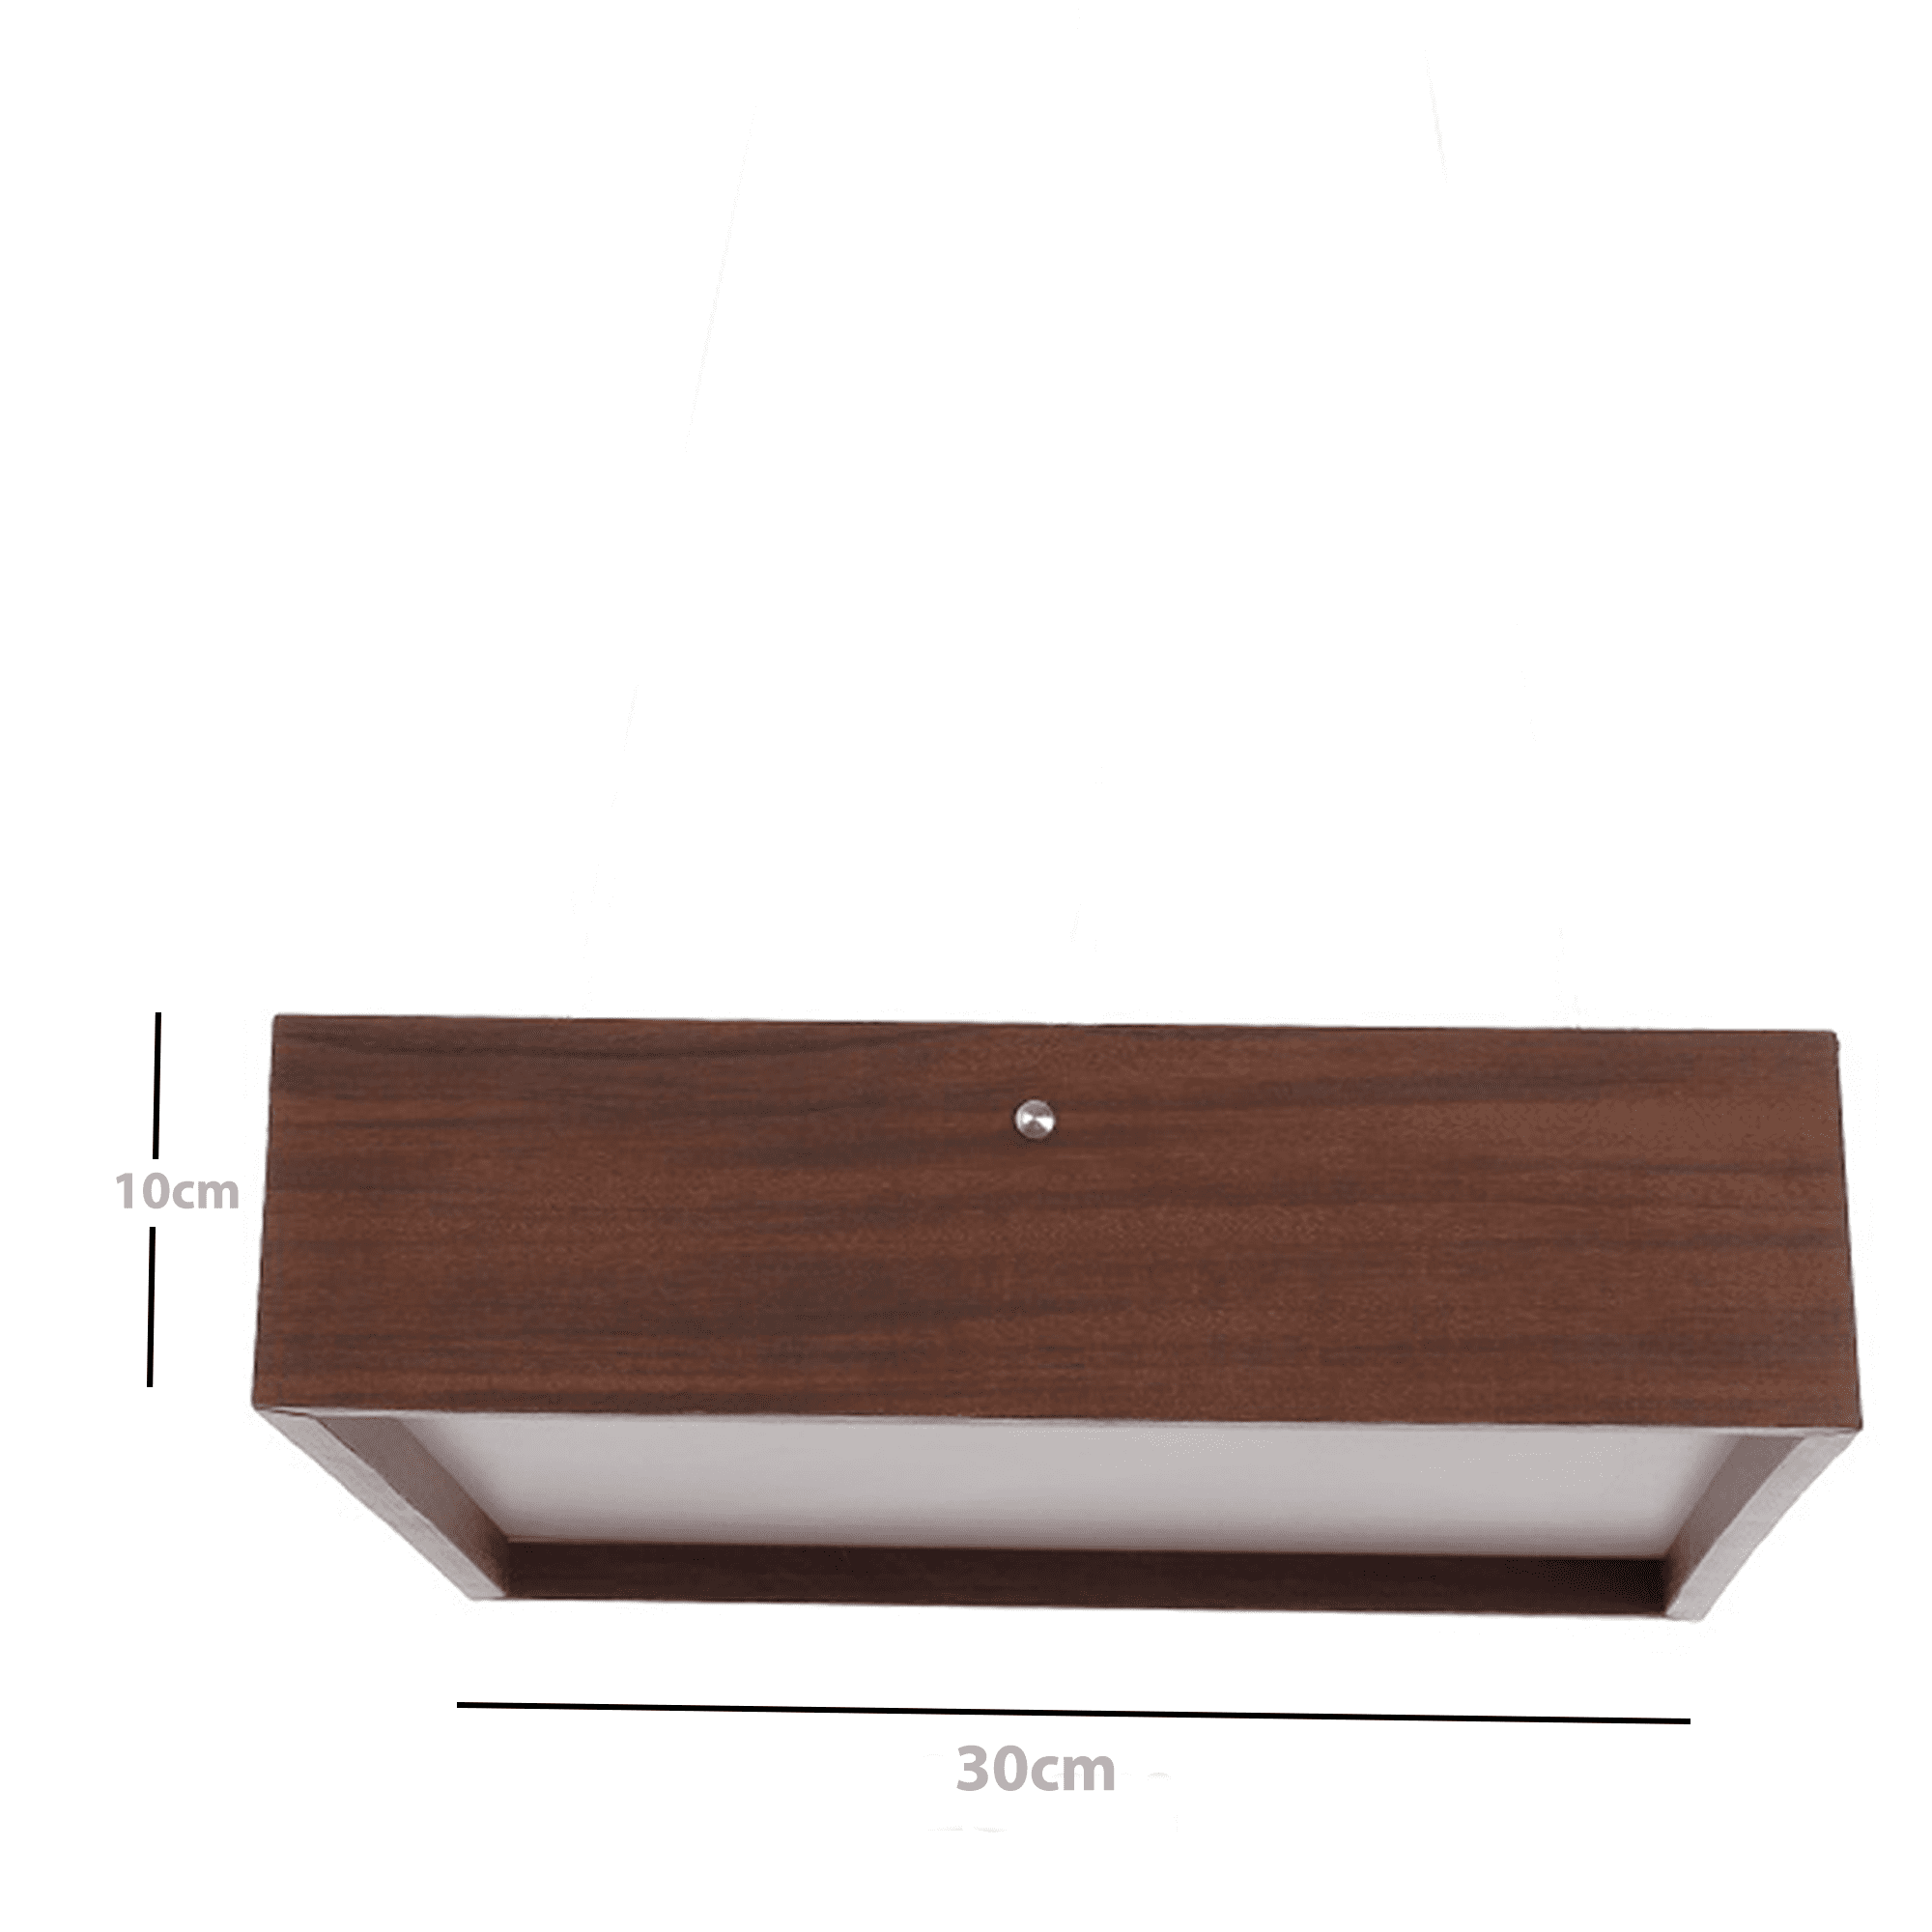 Plafon Wood Quadrado 30x30cm - 2 luzes E27 - Freijó - 4